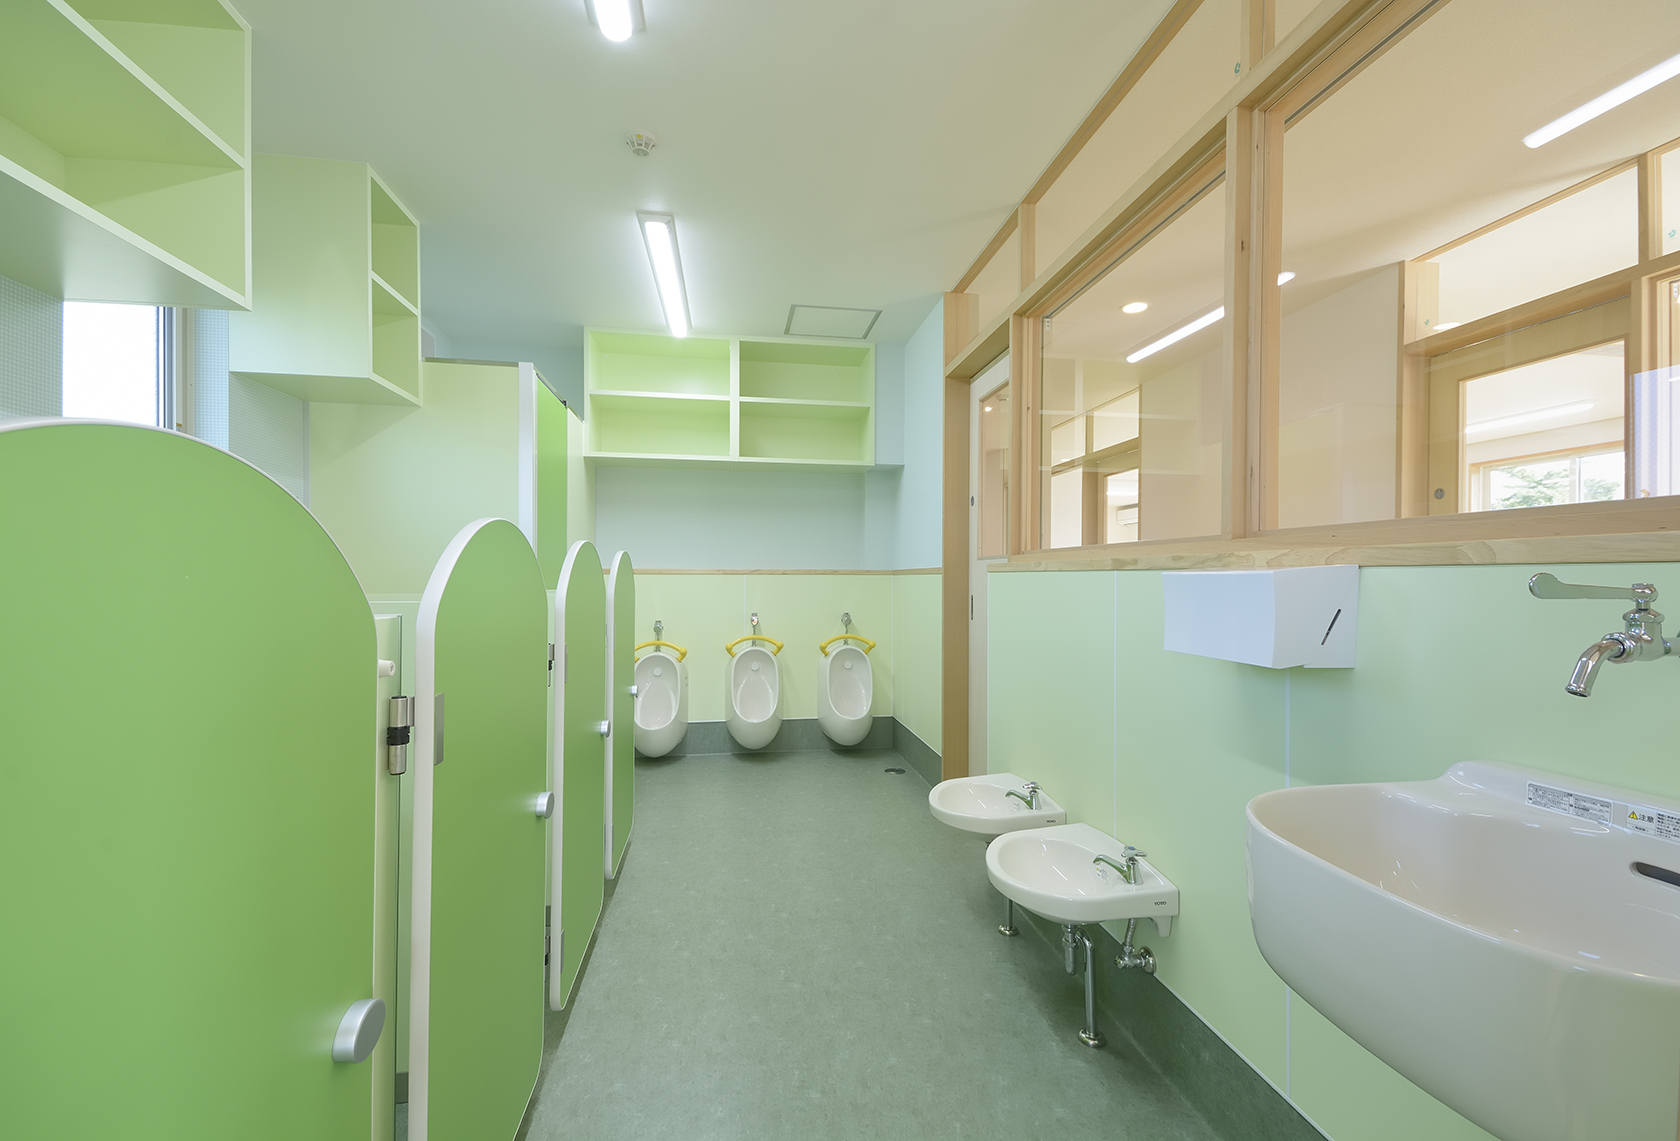 名古屋市中川区の保育施設のグリーンの乳児用のかわいいトイレ